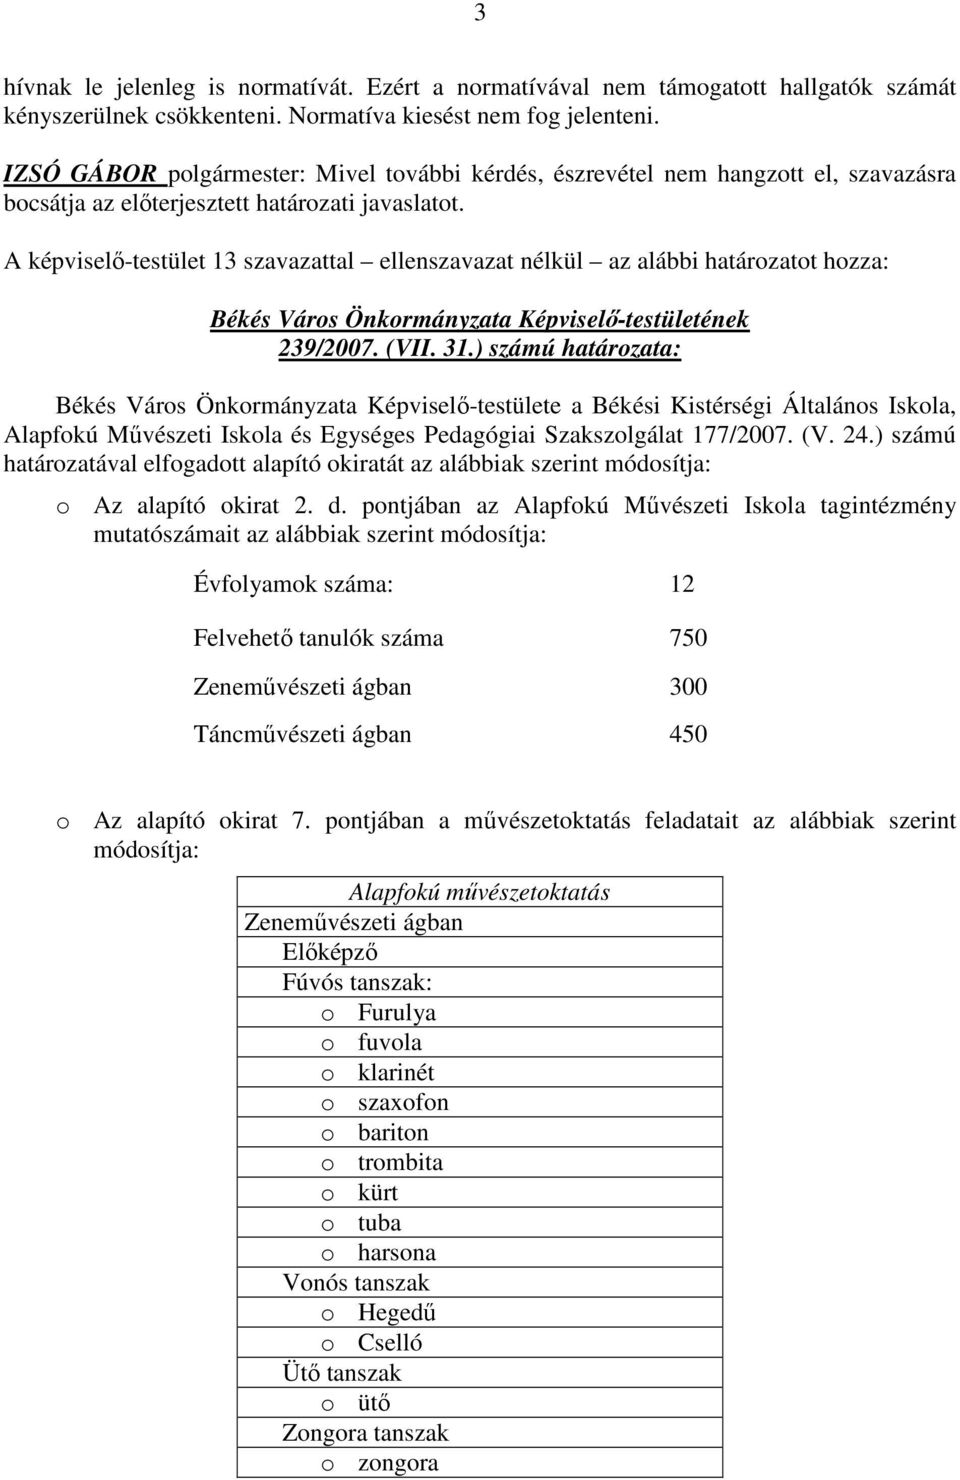 A képviselı-testület 13 szavazattal ellenszavazat nélkül az alábbi határozatot hozza: 239/2007. (VII. 31.